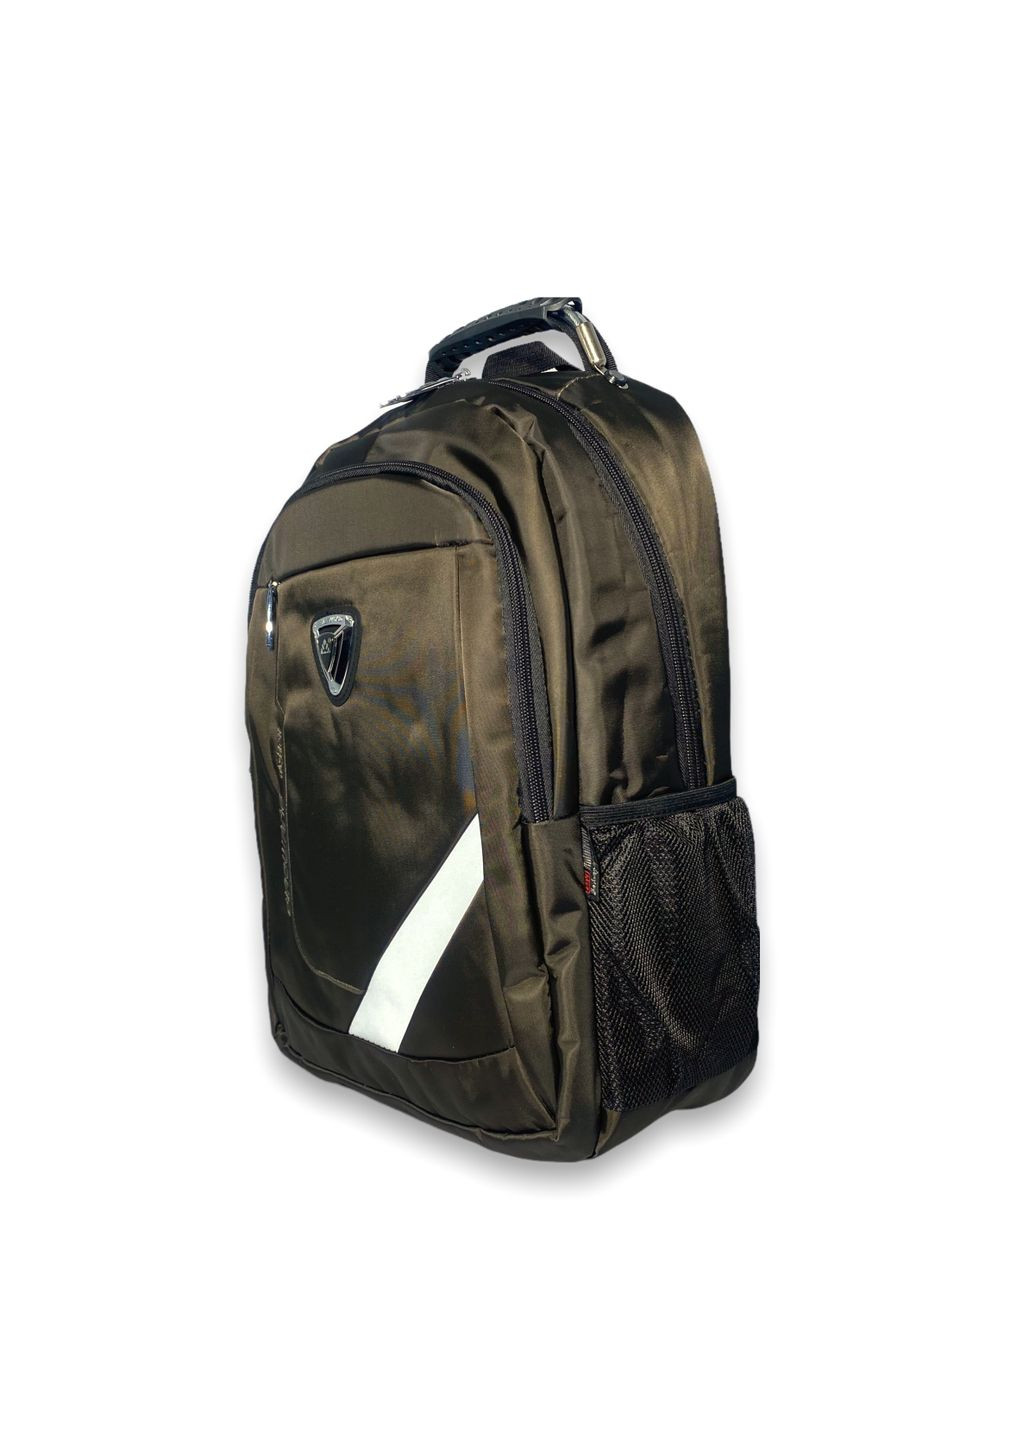 Рюкзак для города BW1902D-17 два отделения,USB слот+кабель, разъем для наушников разм 45*30*15 коричневый Biao Wang (285814735)